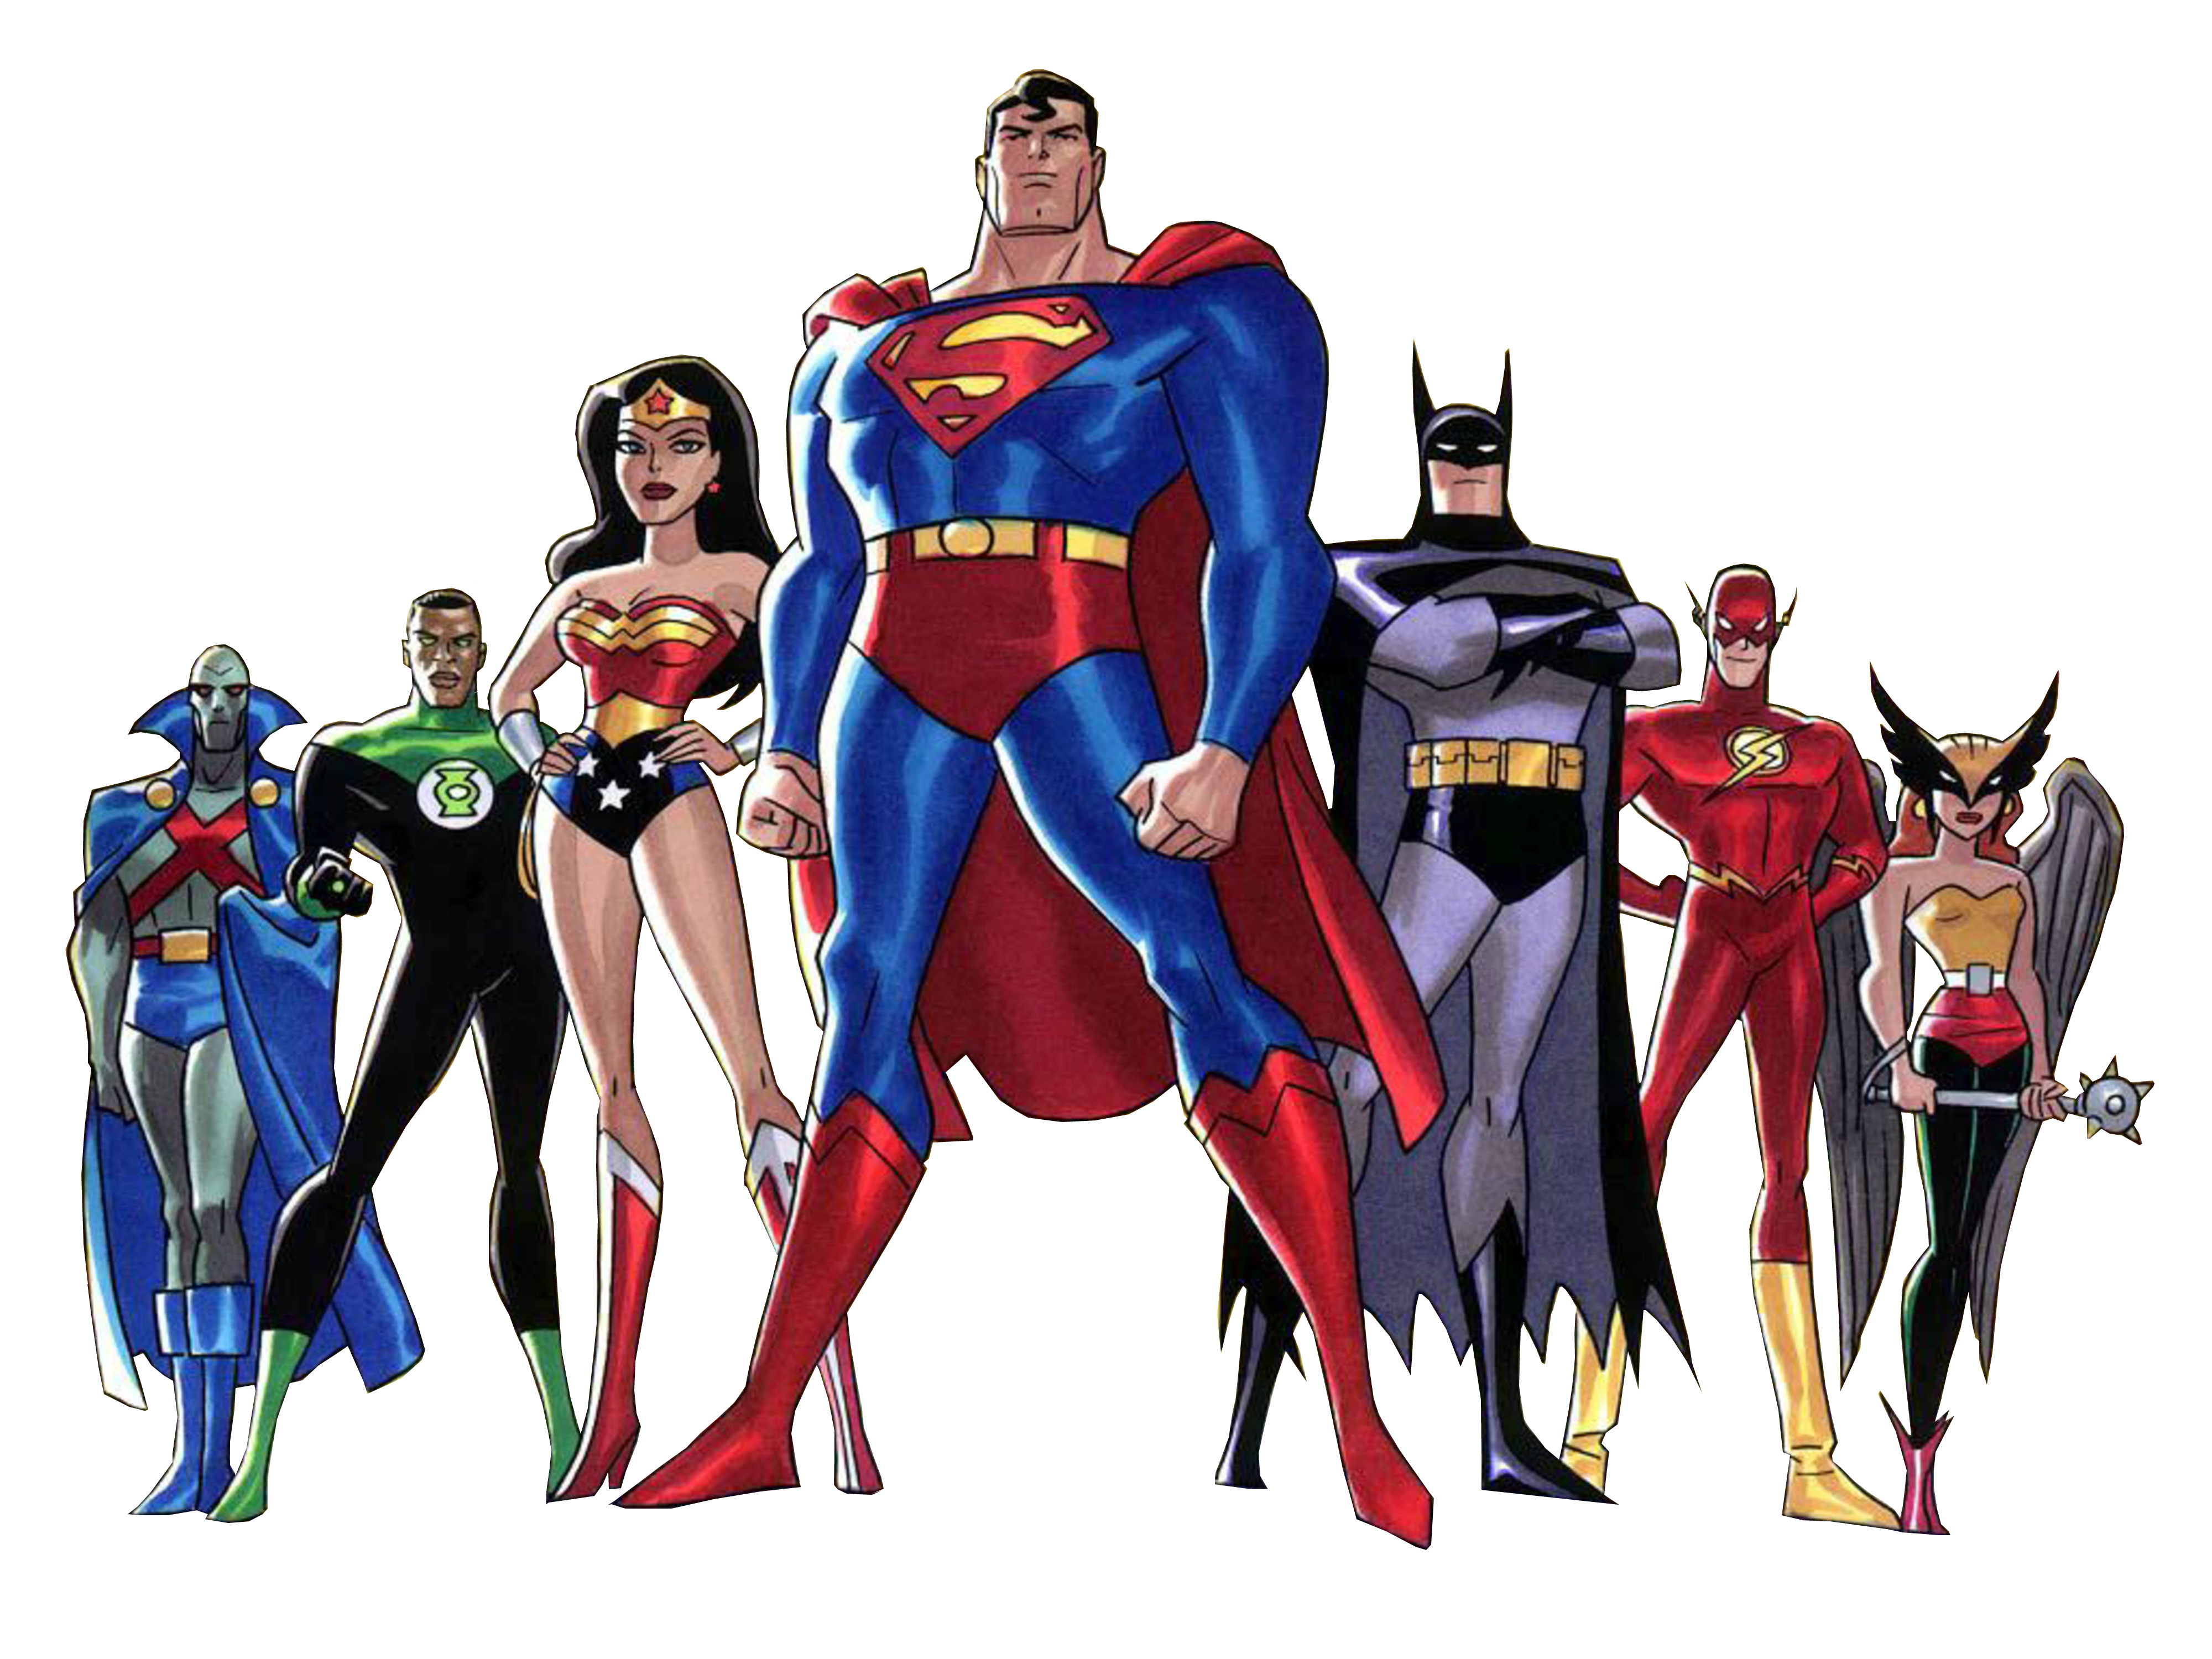 Personnages de Image PNG Justice League